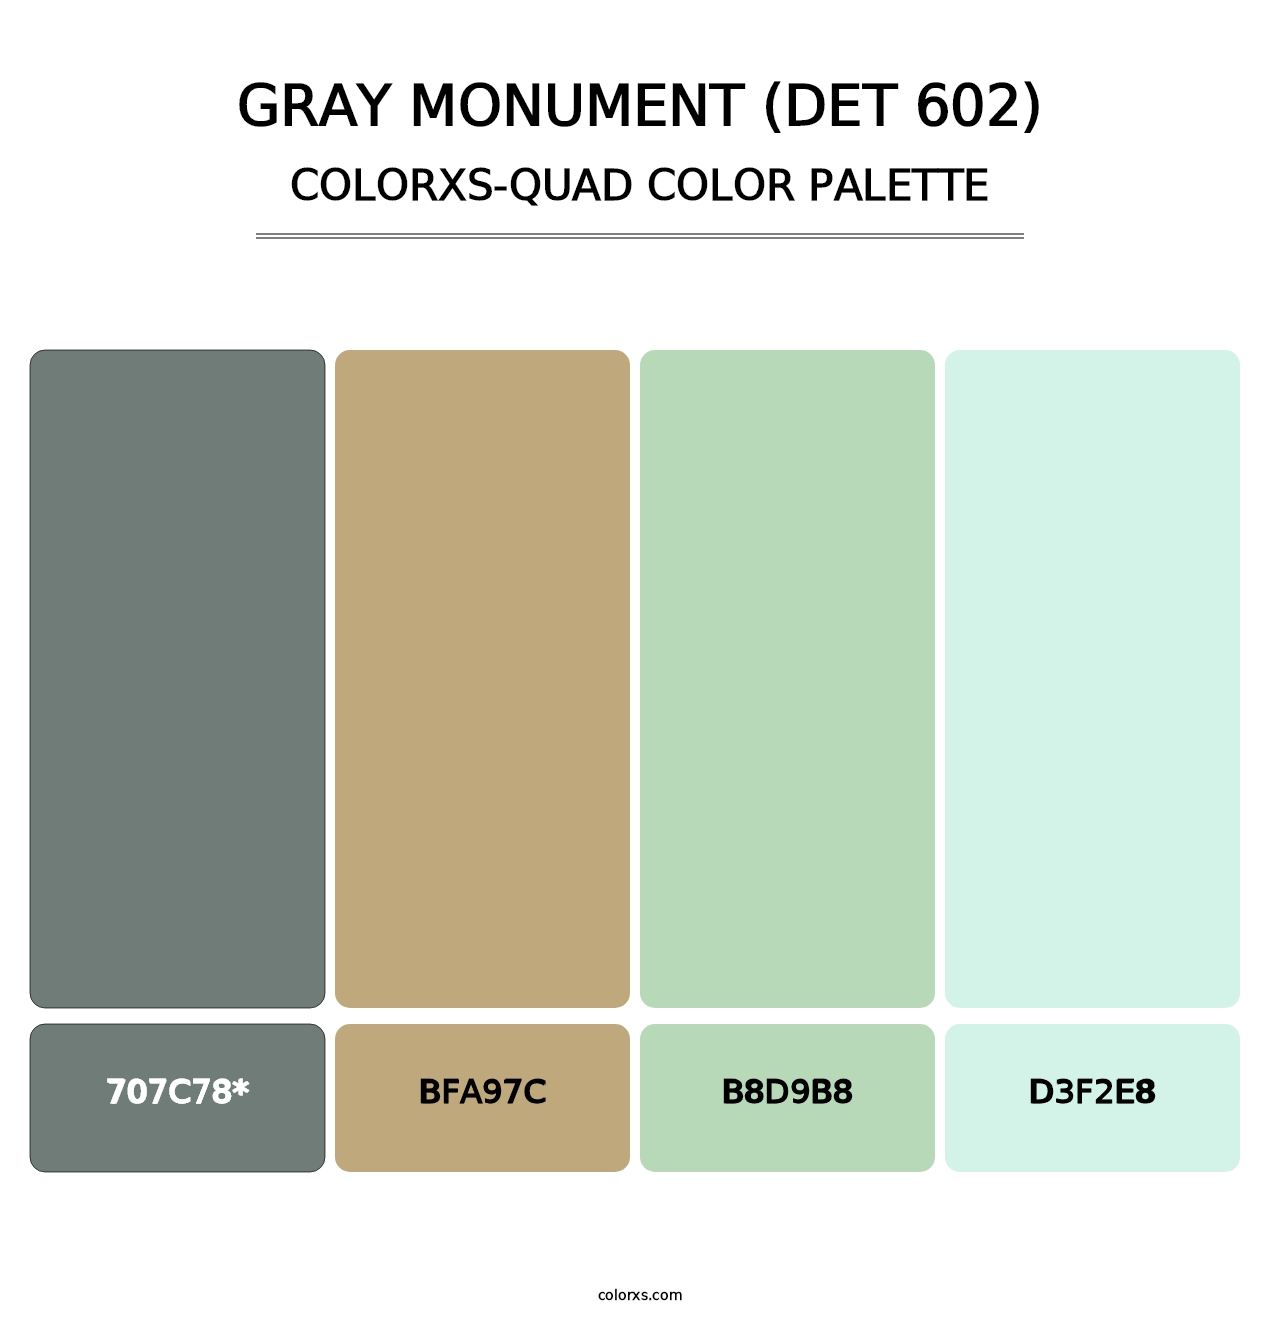 Gray Monument (DET 602) - Colorxs Quad Palette